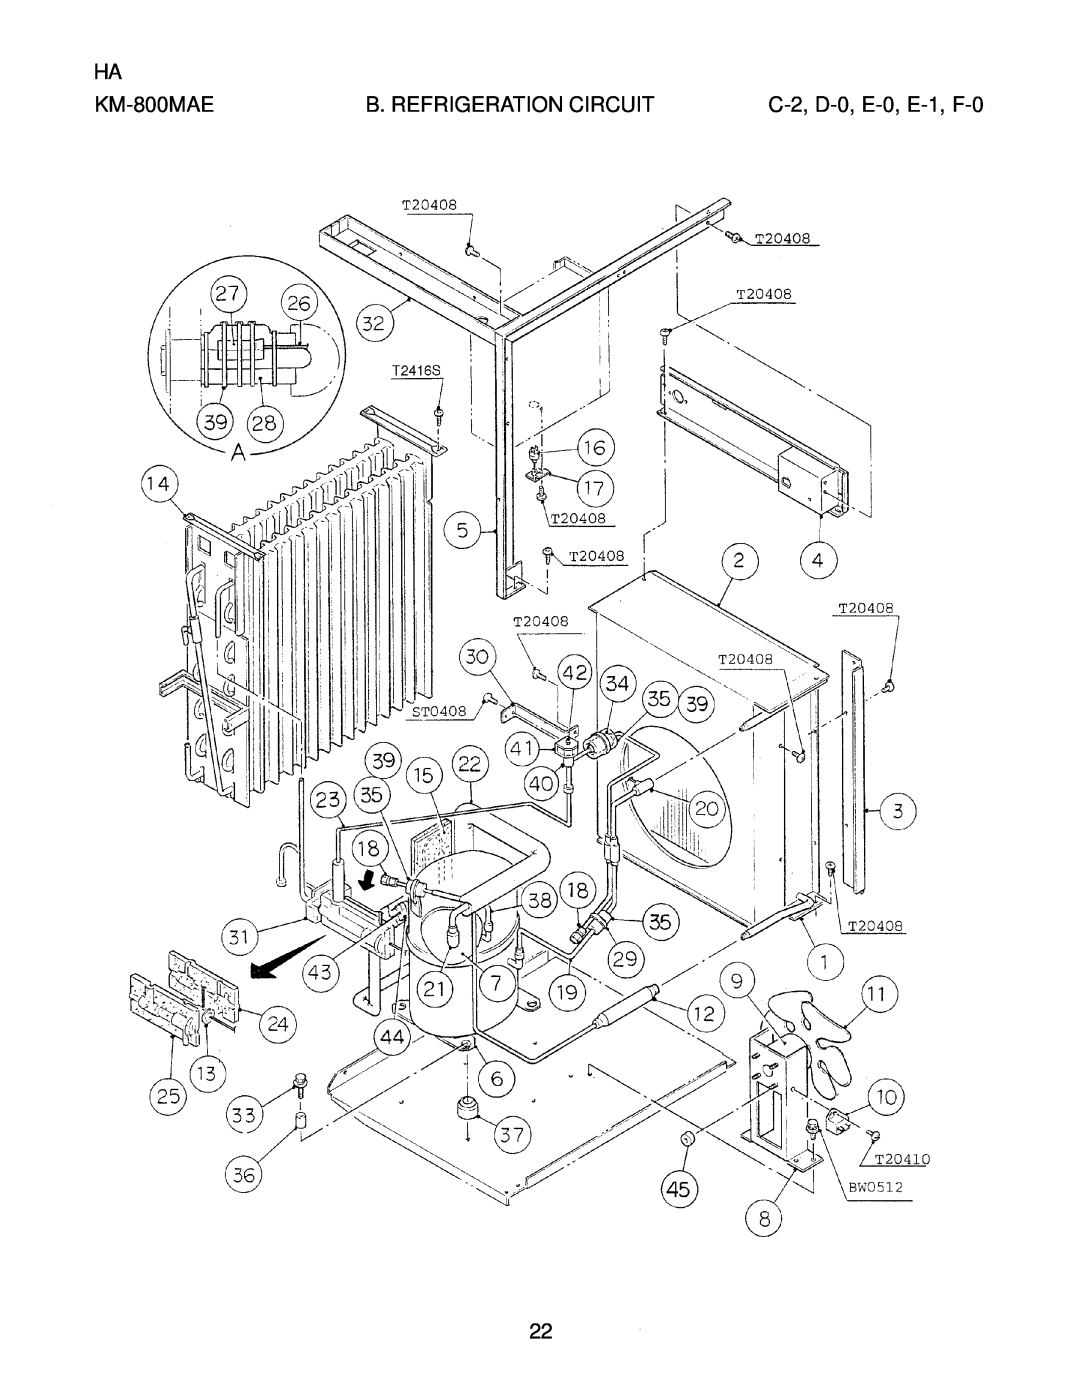 Hoshizaki KM-800MAE, KM-800MWE, KM-800MRE manual C-2, D-0, E-0, E-1, F-0, B. Refrigeration Circuit 